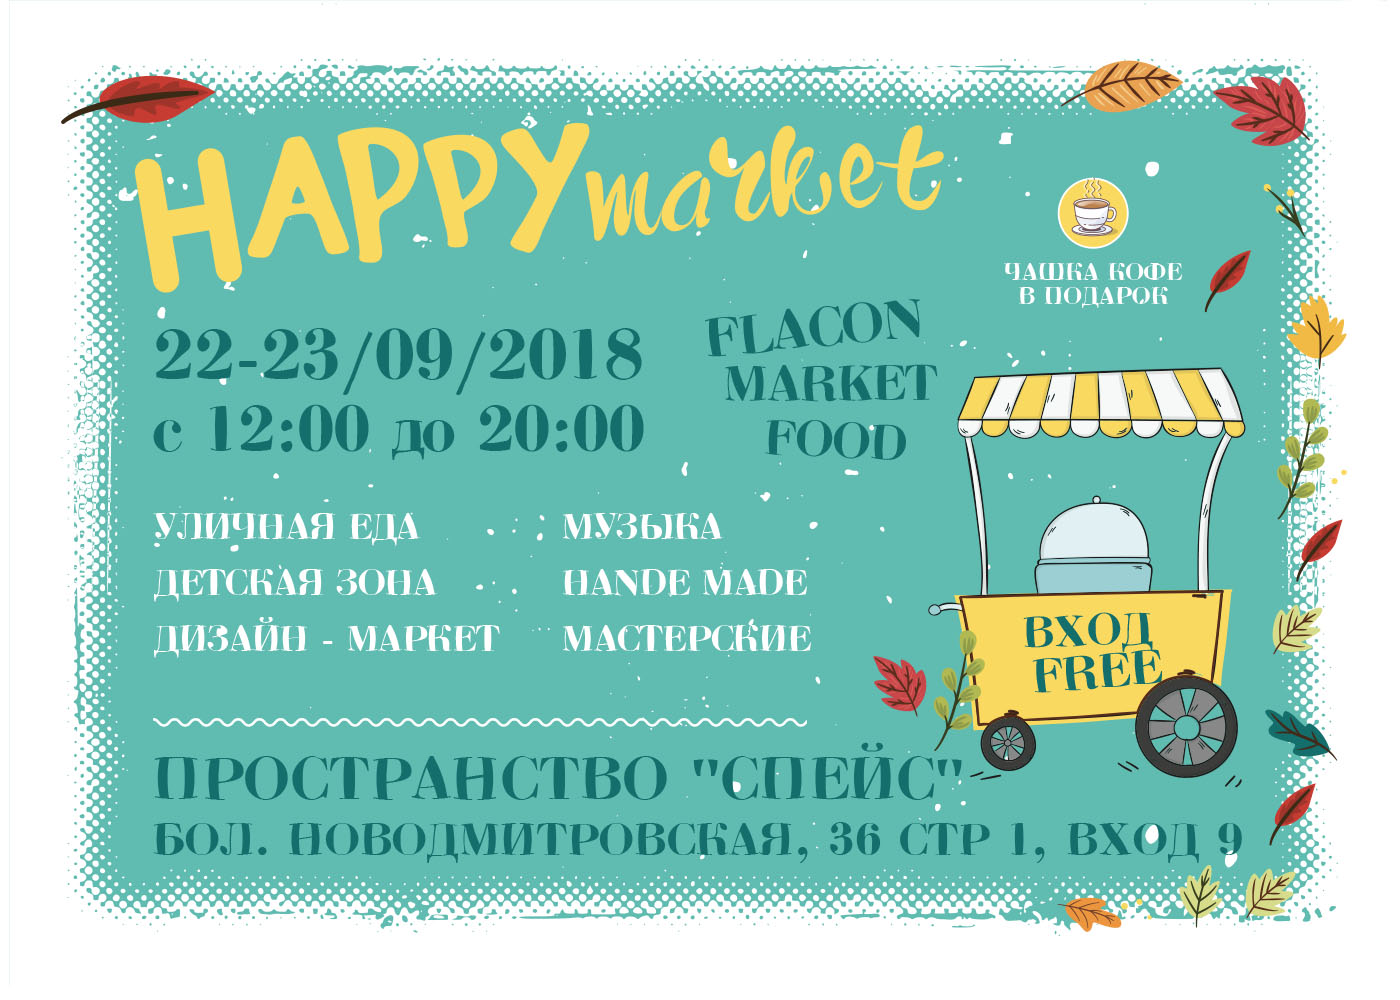 Happy market на дизайн-заводе FLACON